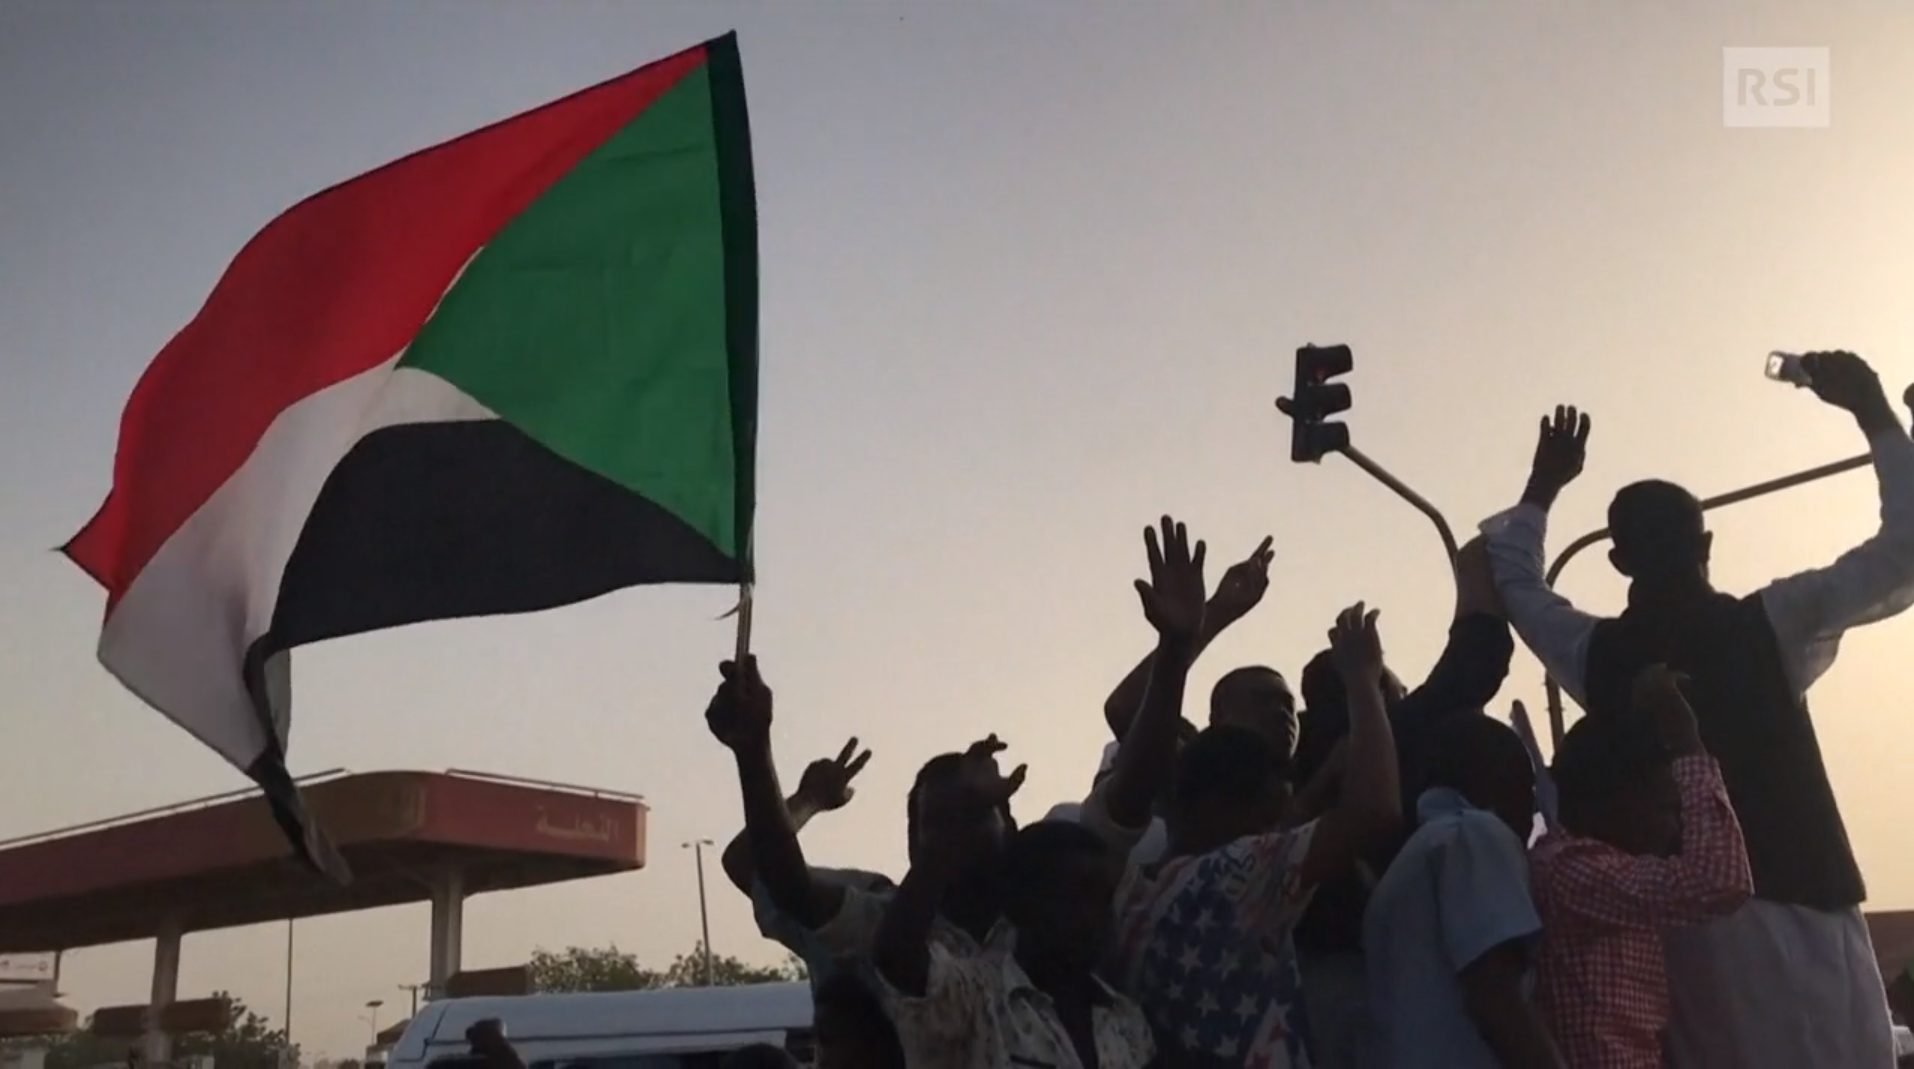 Immagini di dimostranti per strada all alba; sventolano bandiere sudanesi e fanno gesti di vittoria